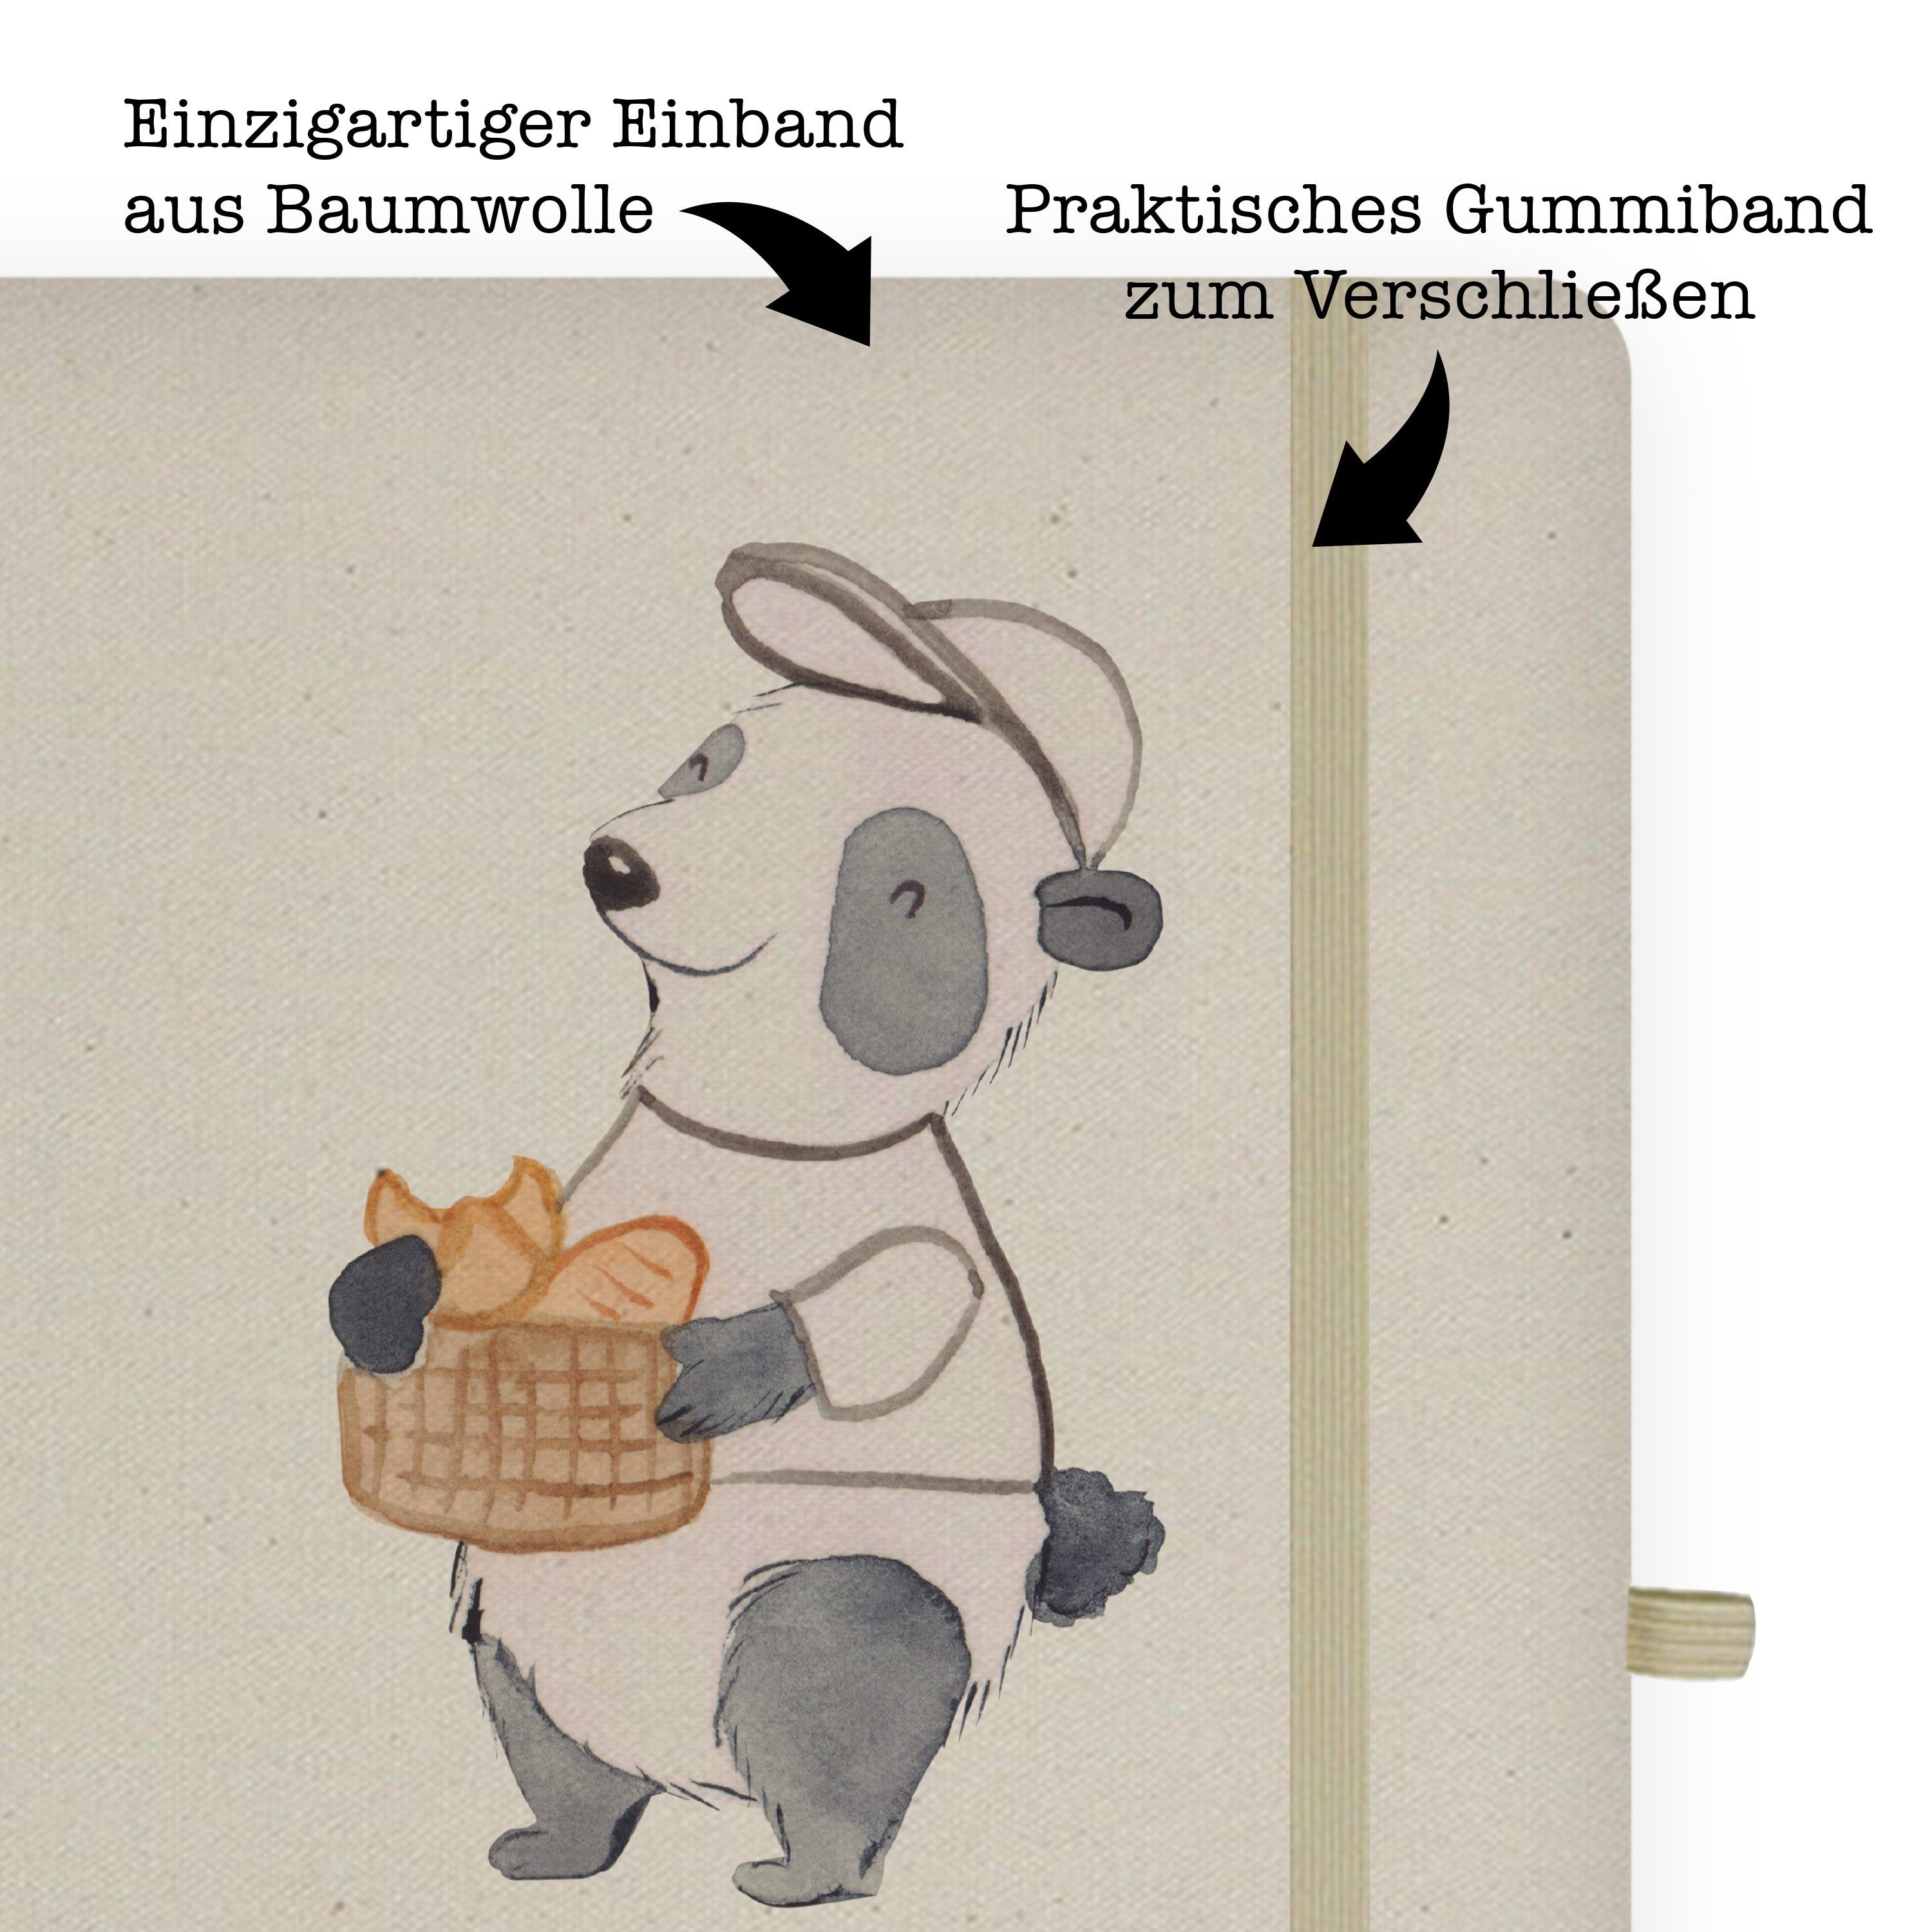 - & Bäcker Panda Geschenk, Mr. Mr. & Transparent Notizbuch Mrs. - Herz Schenke mit Mrs. Rente, Schreibheft, Panda